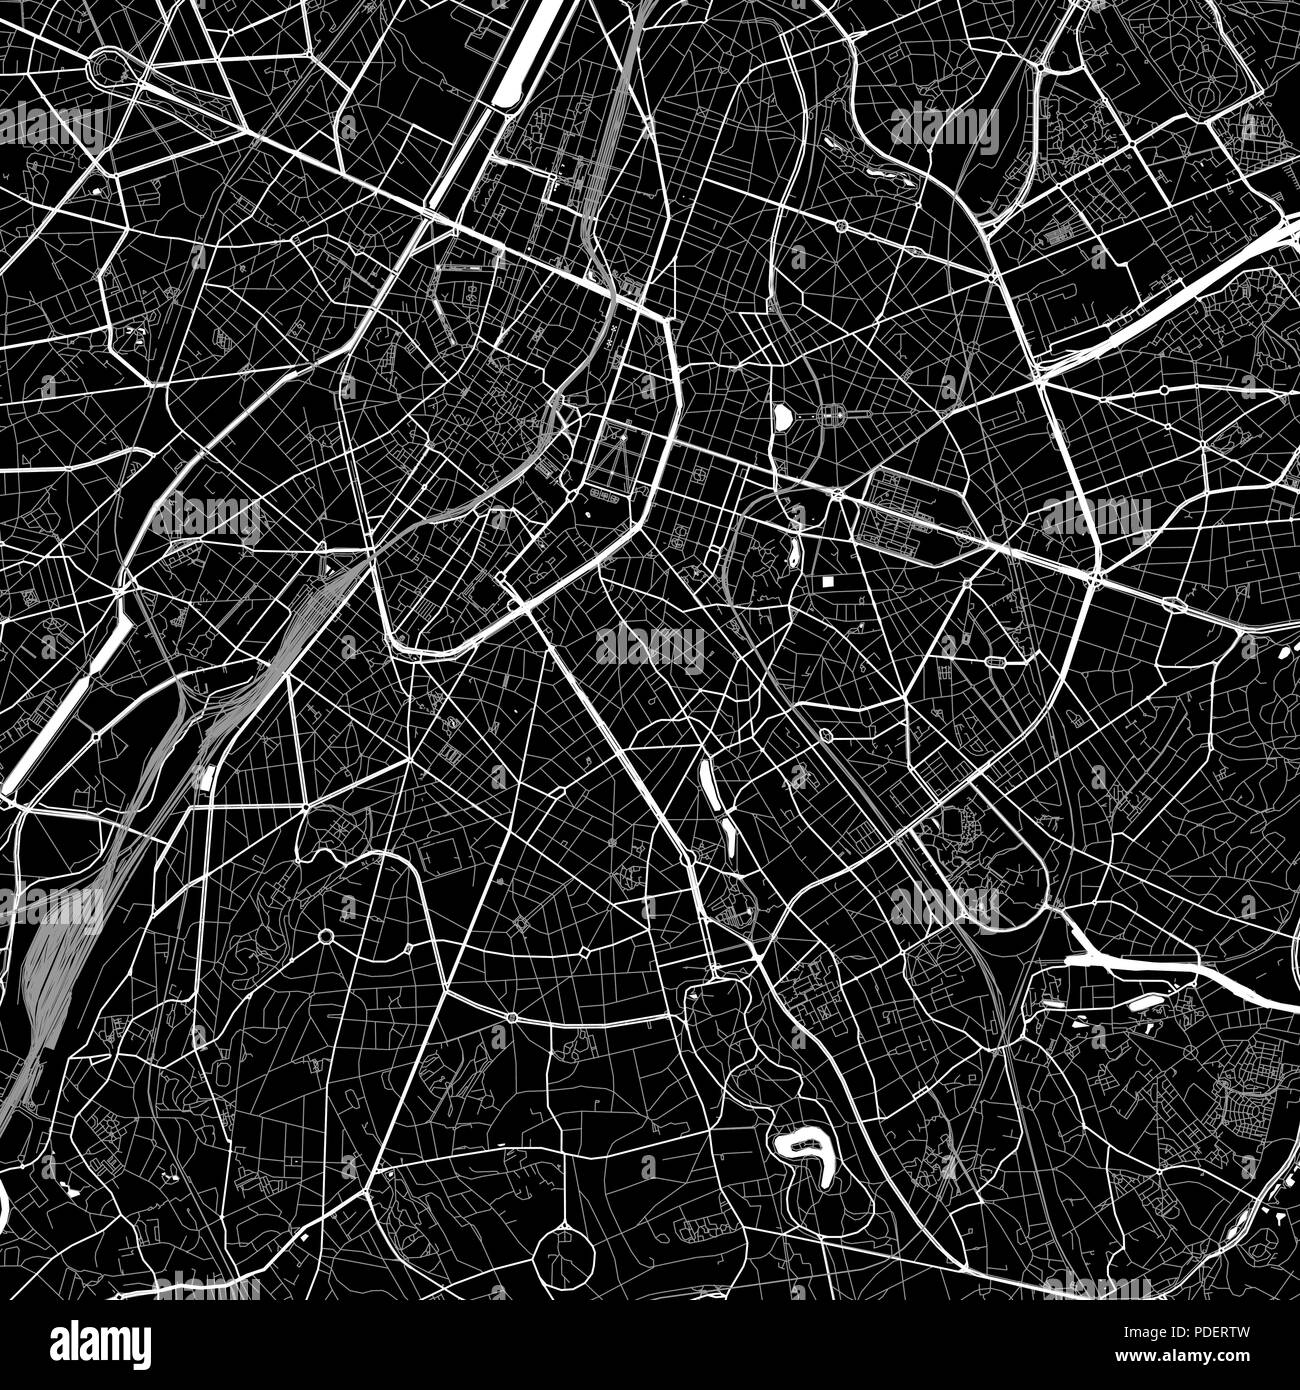 Lageplan von Ixelles, Belgien. Der dunkle Hintergrund Version für Infografik und Marketing. Diese Karte von Ixelles, Region Brüssel-Hauptstadt, enthält Straßen, Stock Vektor